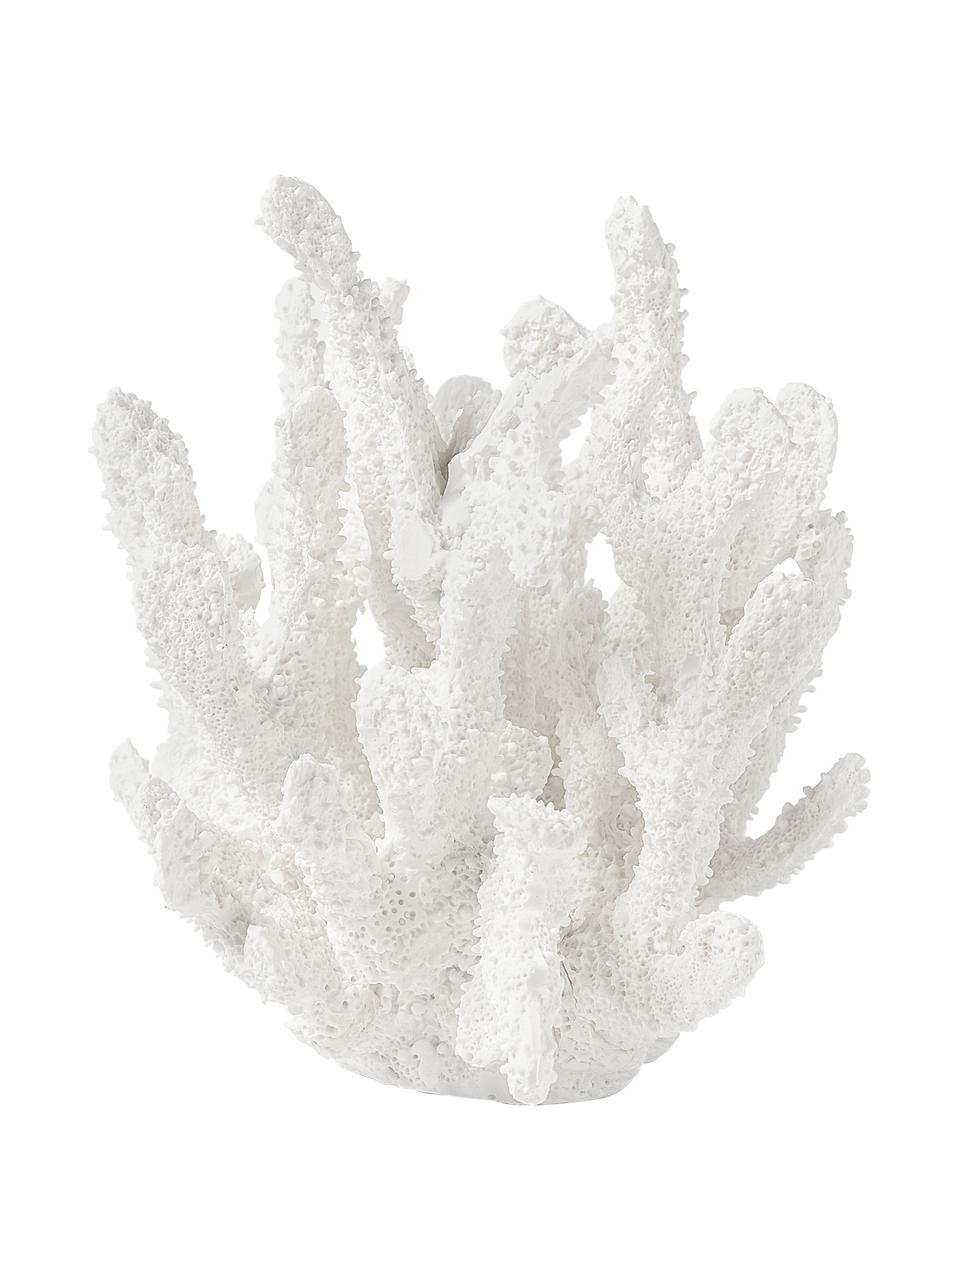 Dekoracja Coral, Poliresing, Biały, S 22 x W 17 cm